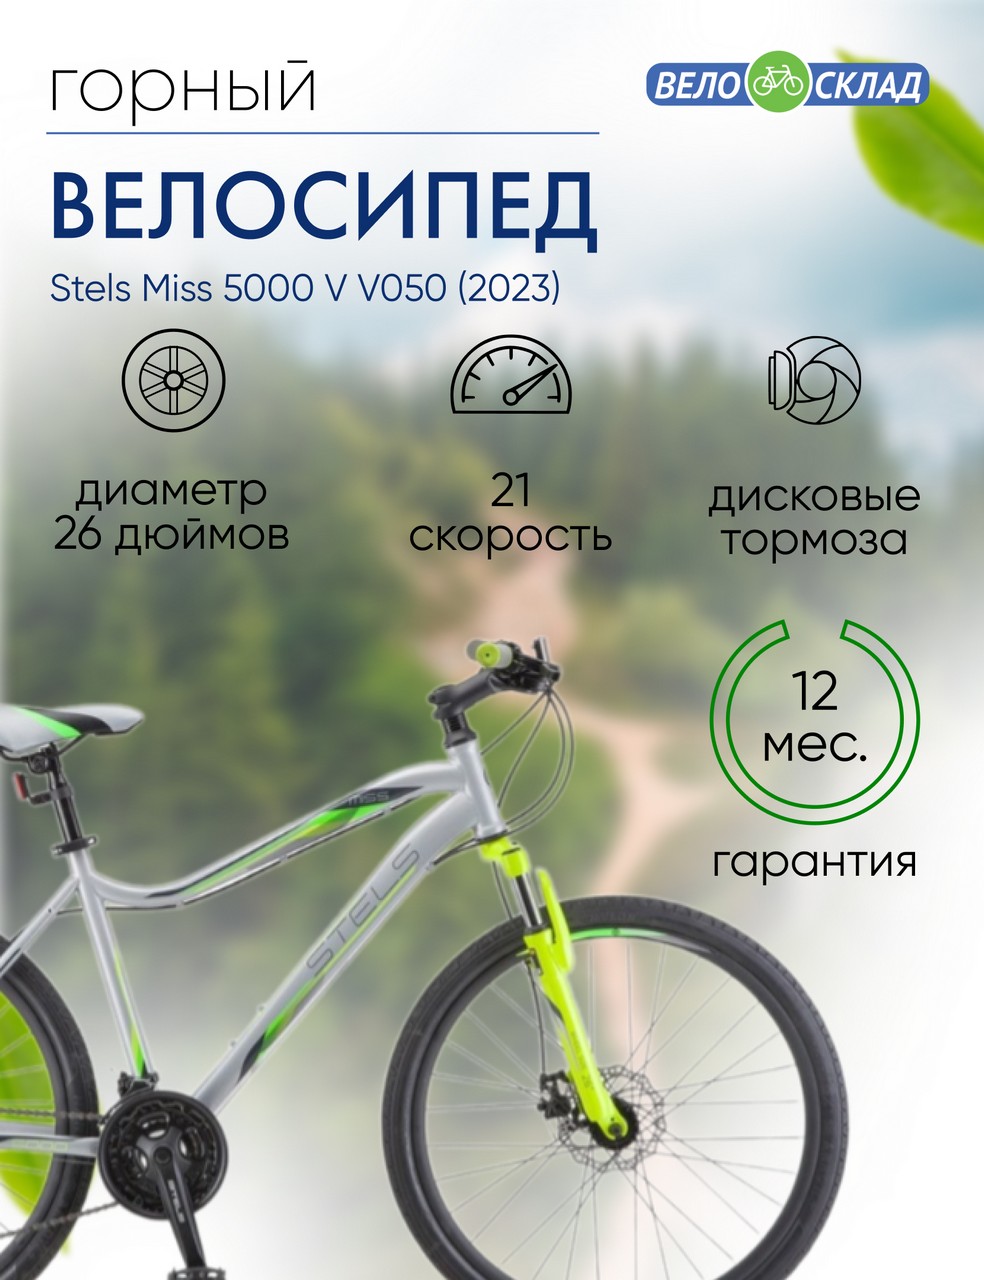 Женский велосипед Stels Miss 5000 V V050, год 2023, цвет Серебристый-Зеленый, ростовка 16